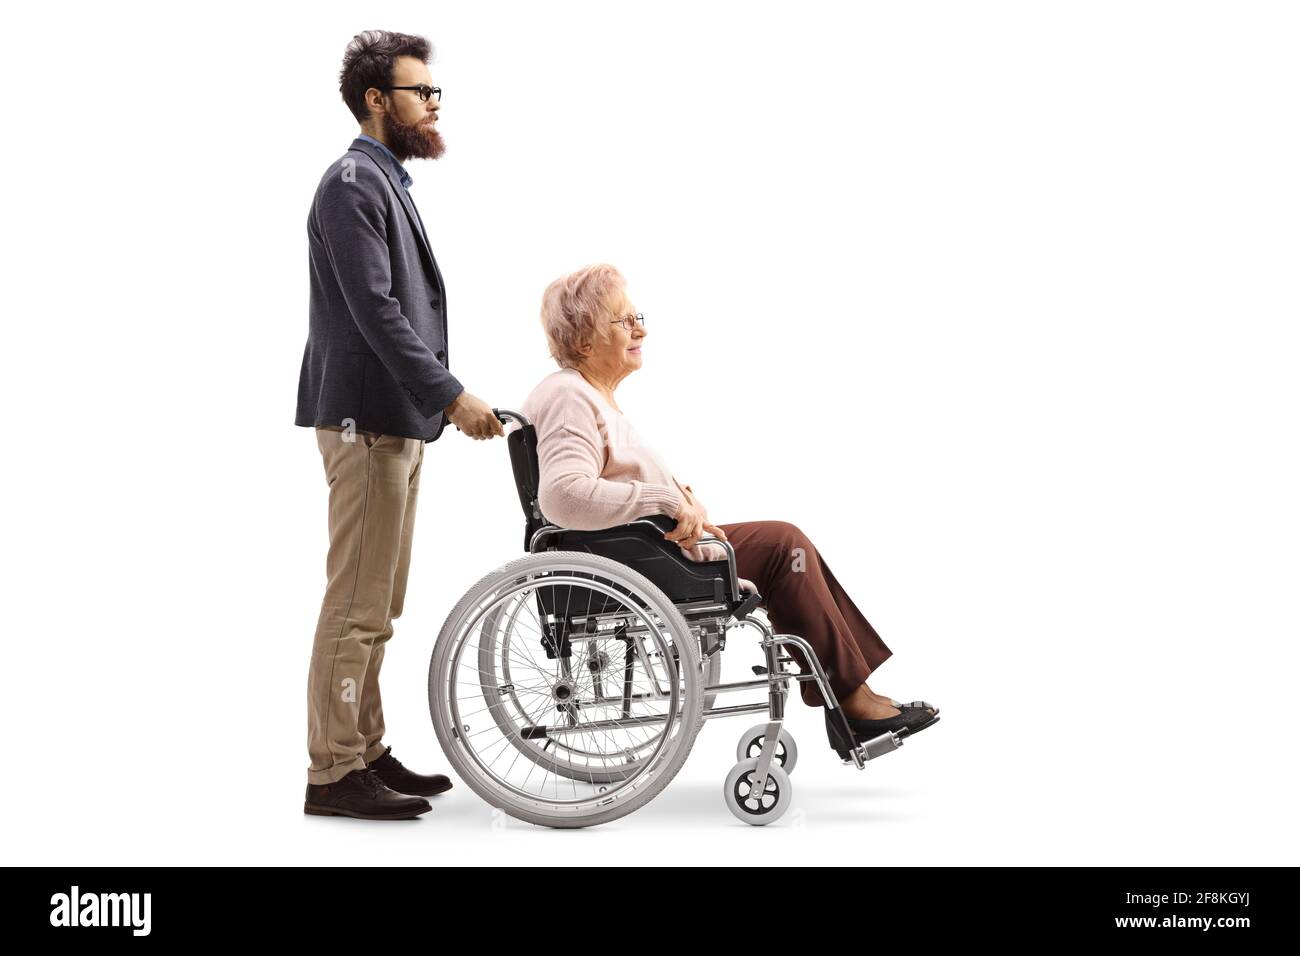 Prise de vue sur toute la longueur d'un homme barbu poussant un femme âgée assise dans un fauteuil roulant isolé sur fond blanc Banque D'Images